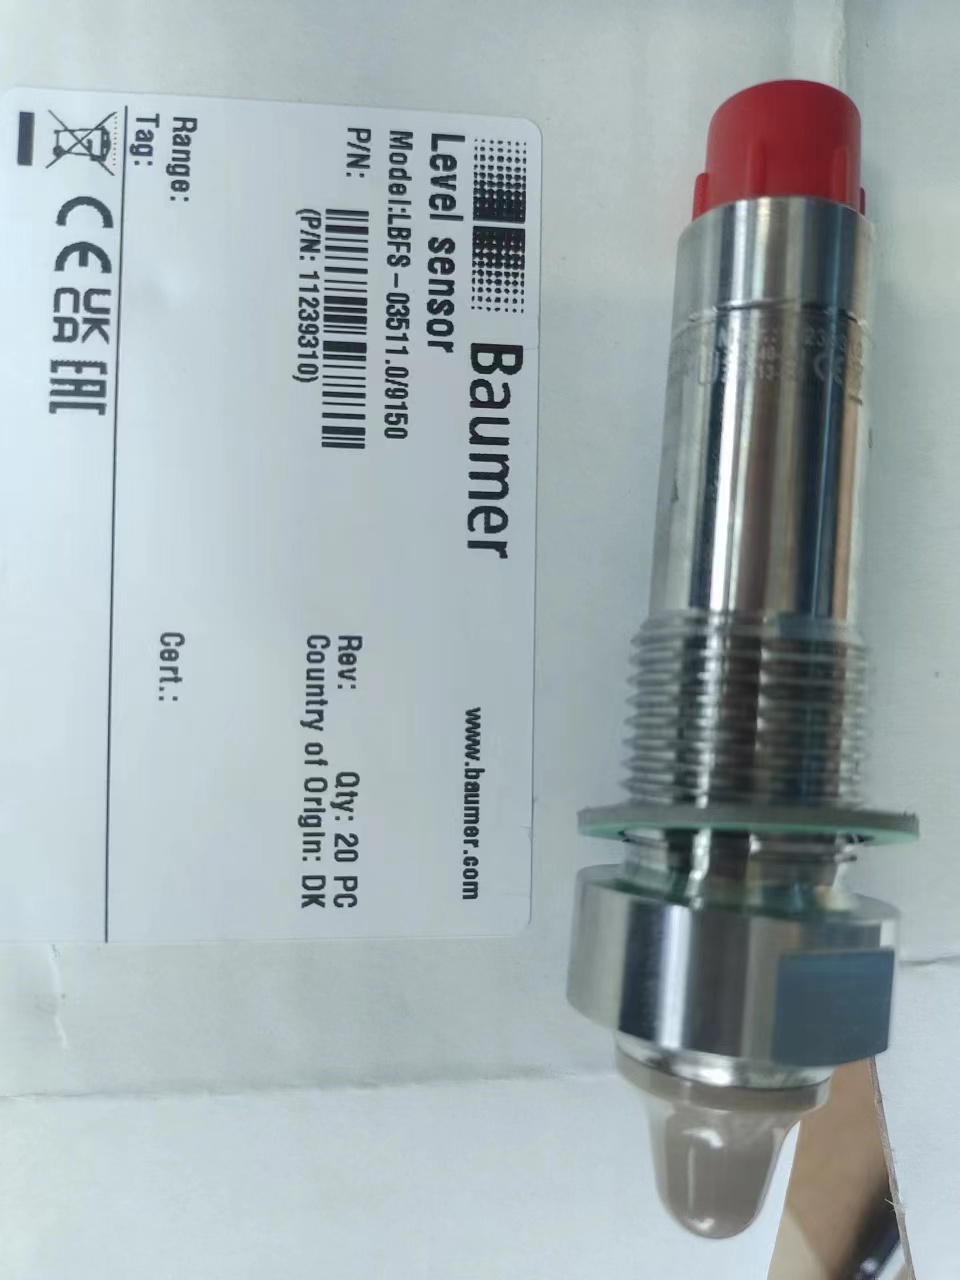 堡盟baumer液位传感器LBFS-03111.0